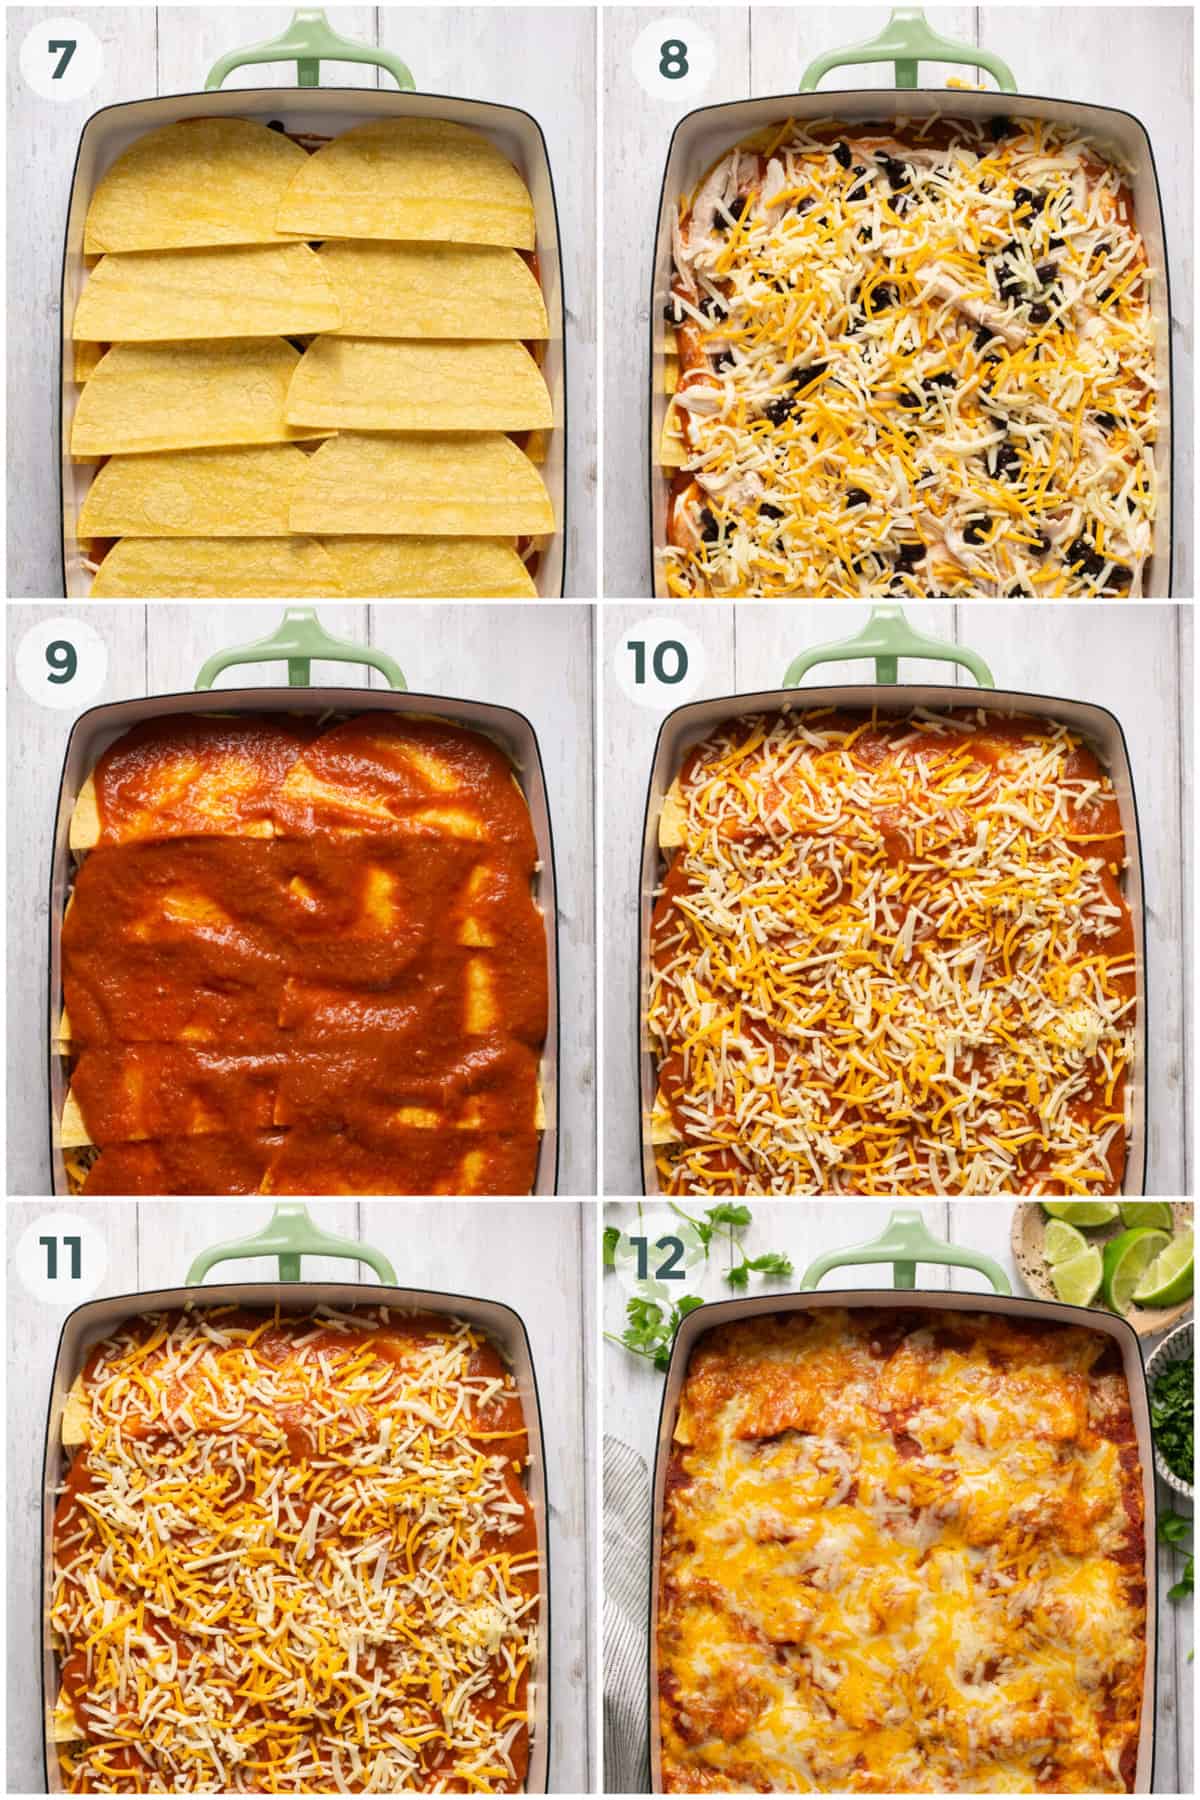 steps 7-12 of preparing chicken enchilada casserole